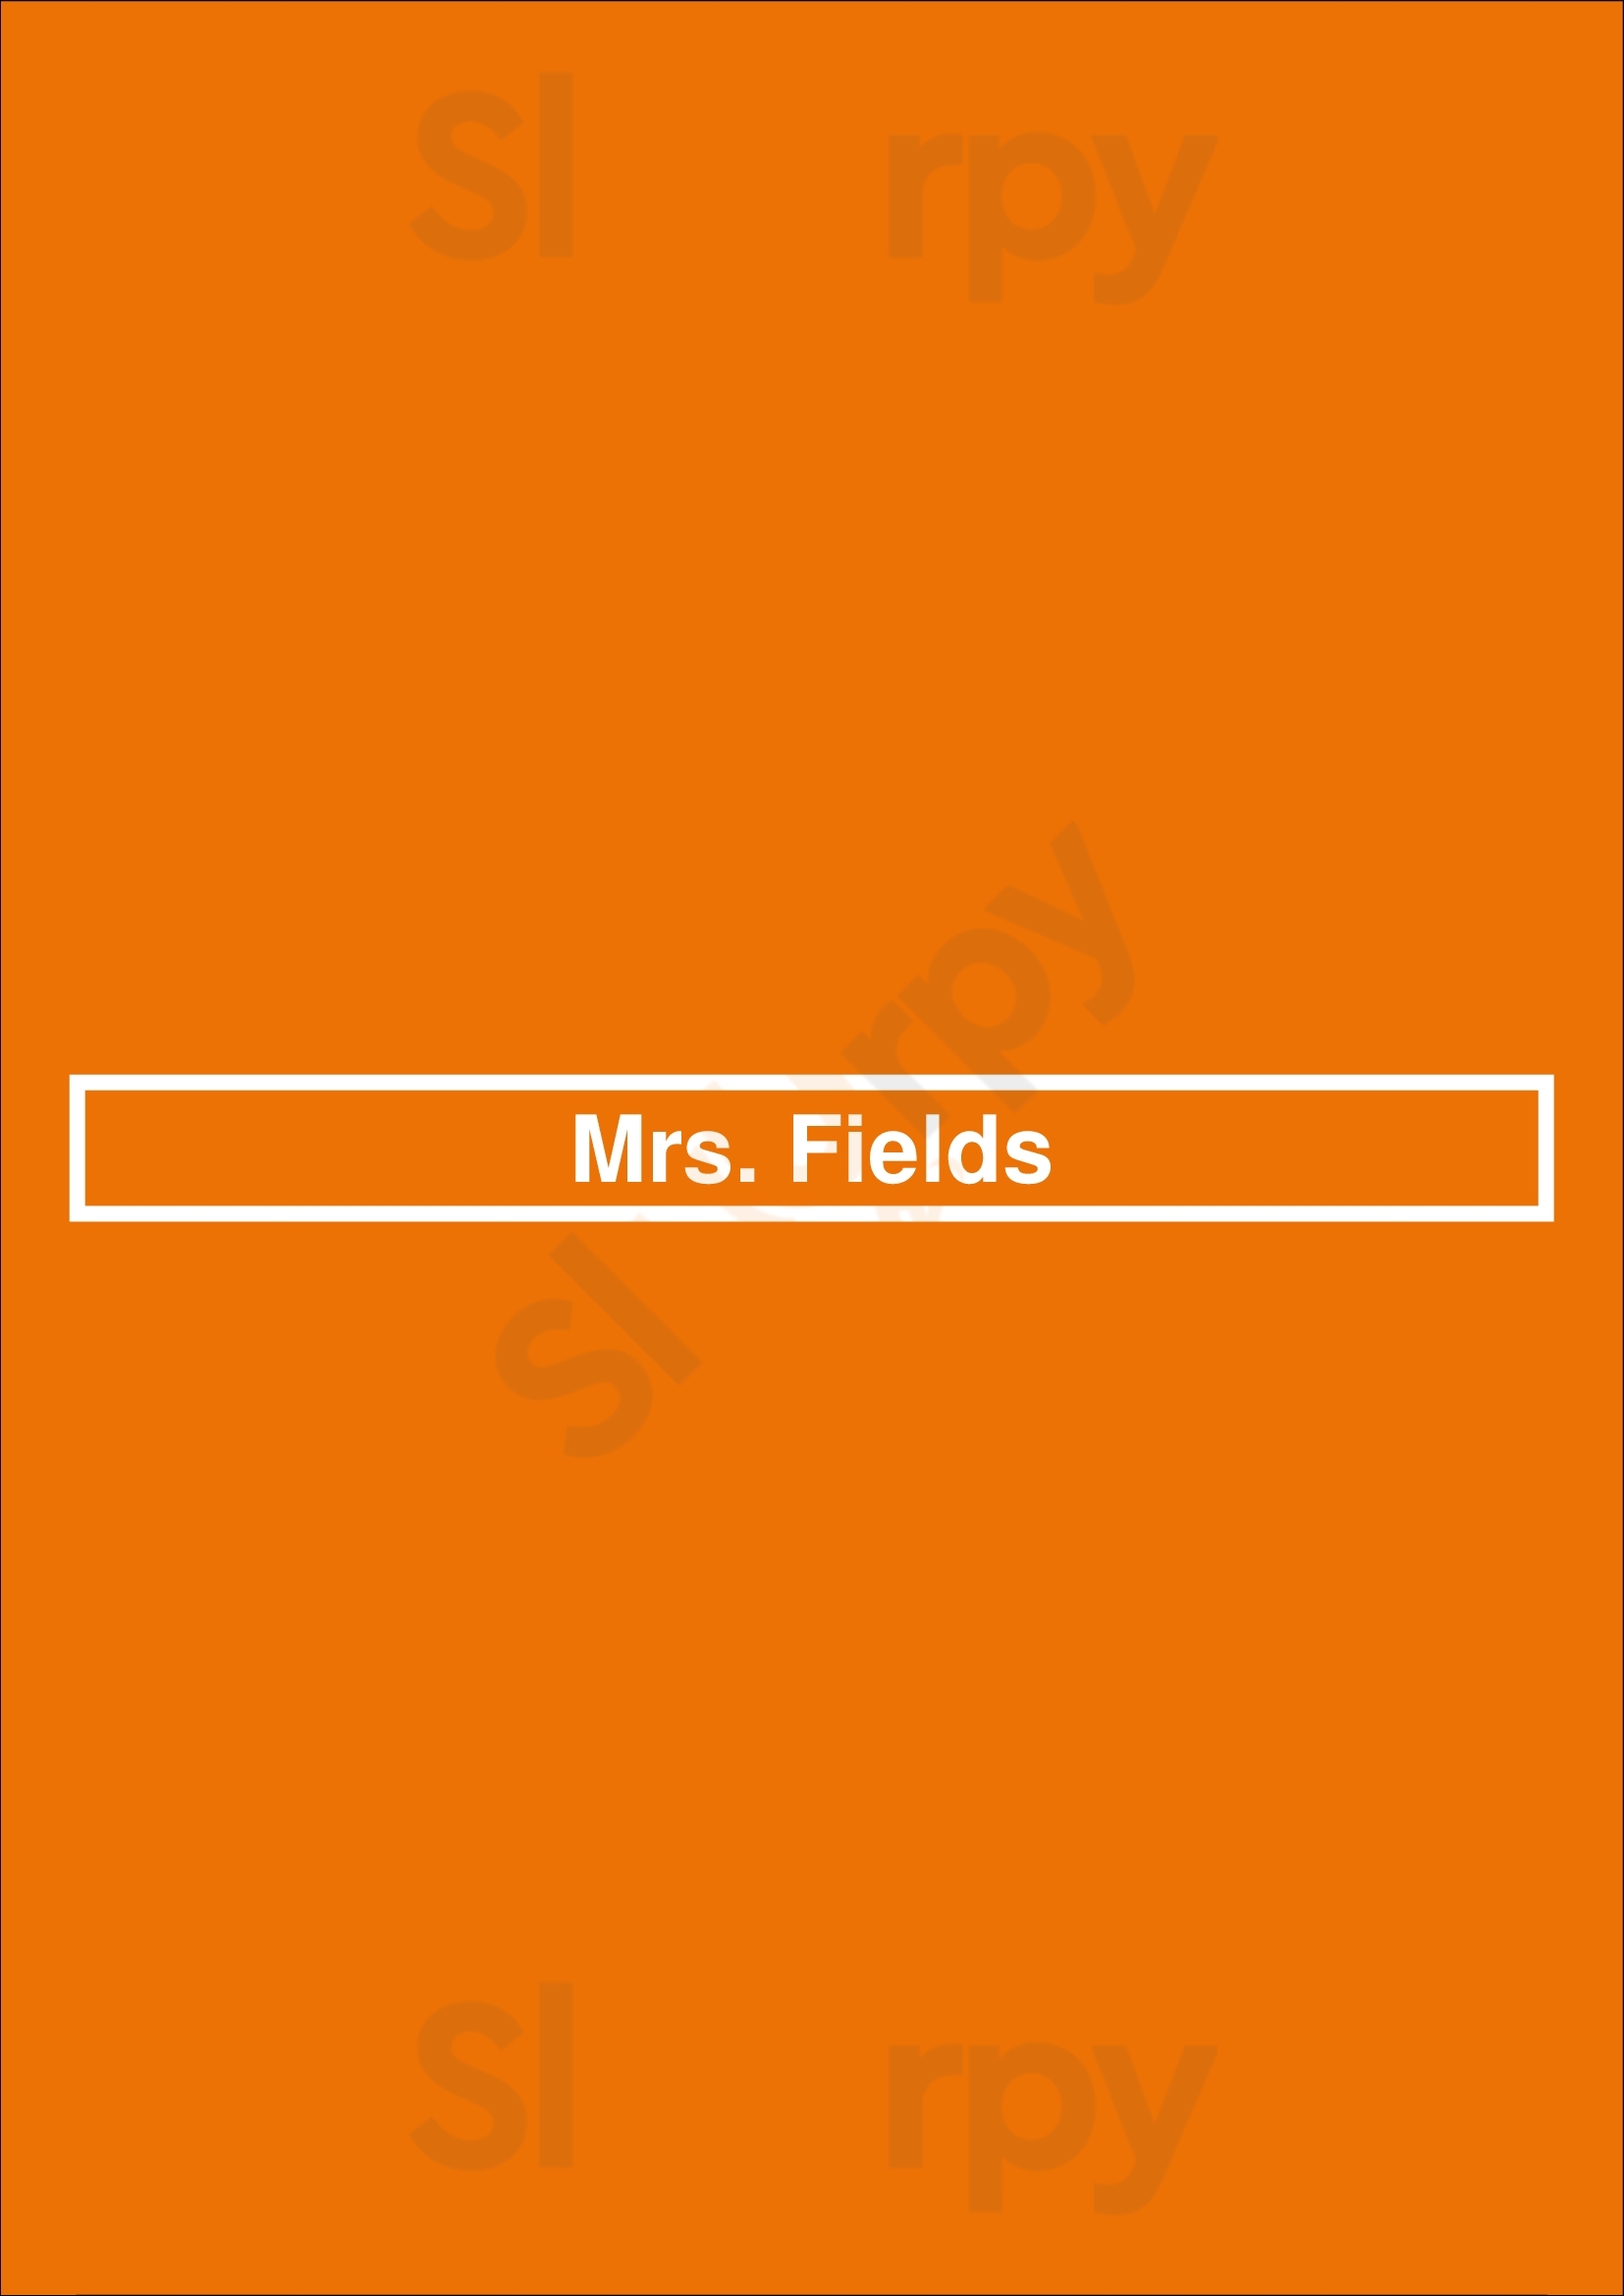 Mrs. Fields Chicago Menu - 1